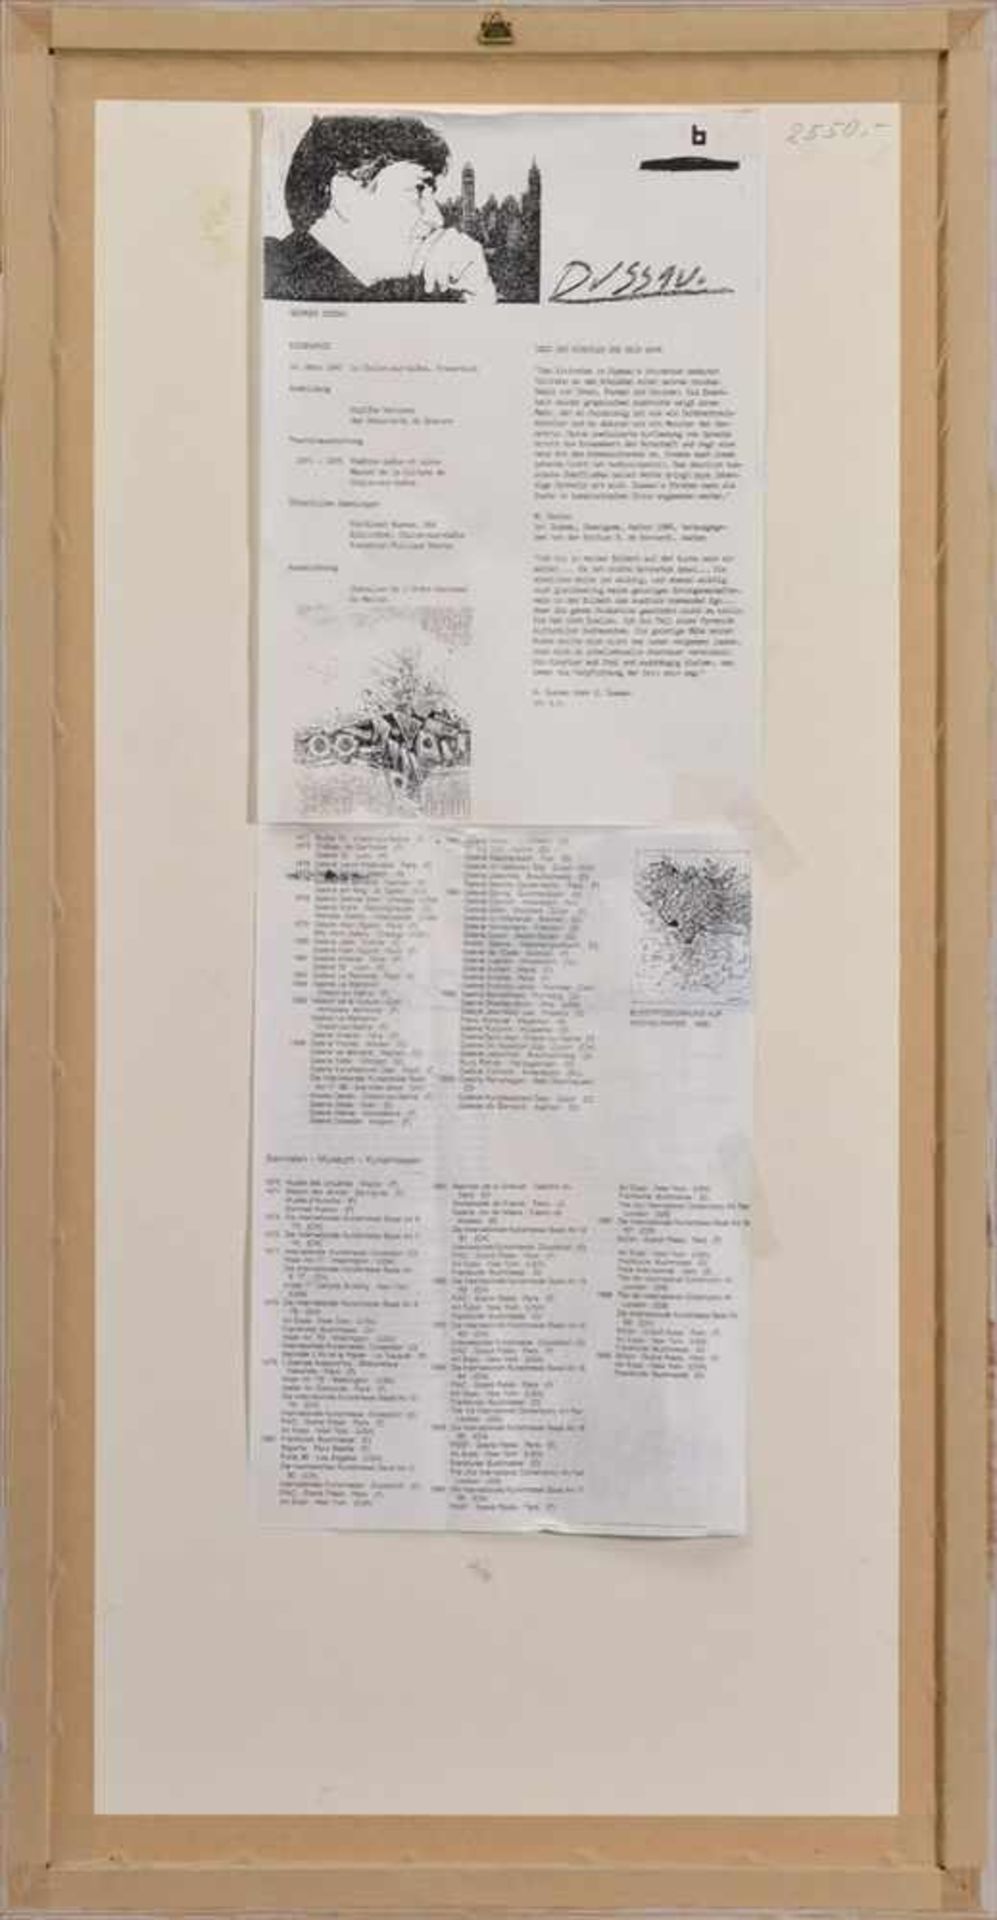 Georges Dussau (1947 in Chalon-sur-Saone), Abstraktion im Hochformat, 1994, Mischtechnik auf Papier, - Bild 4 aus 4